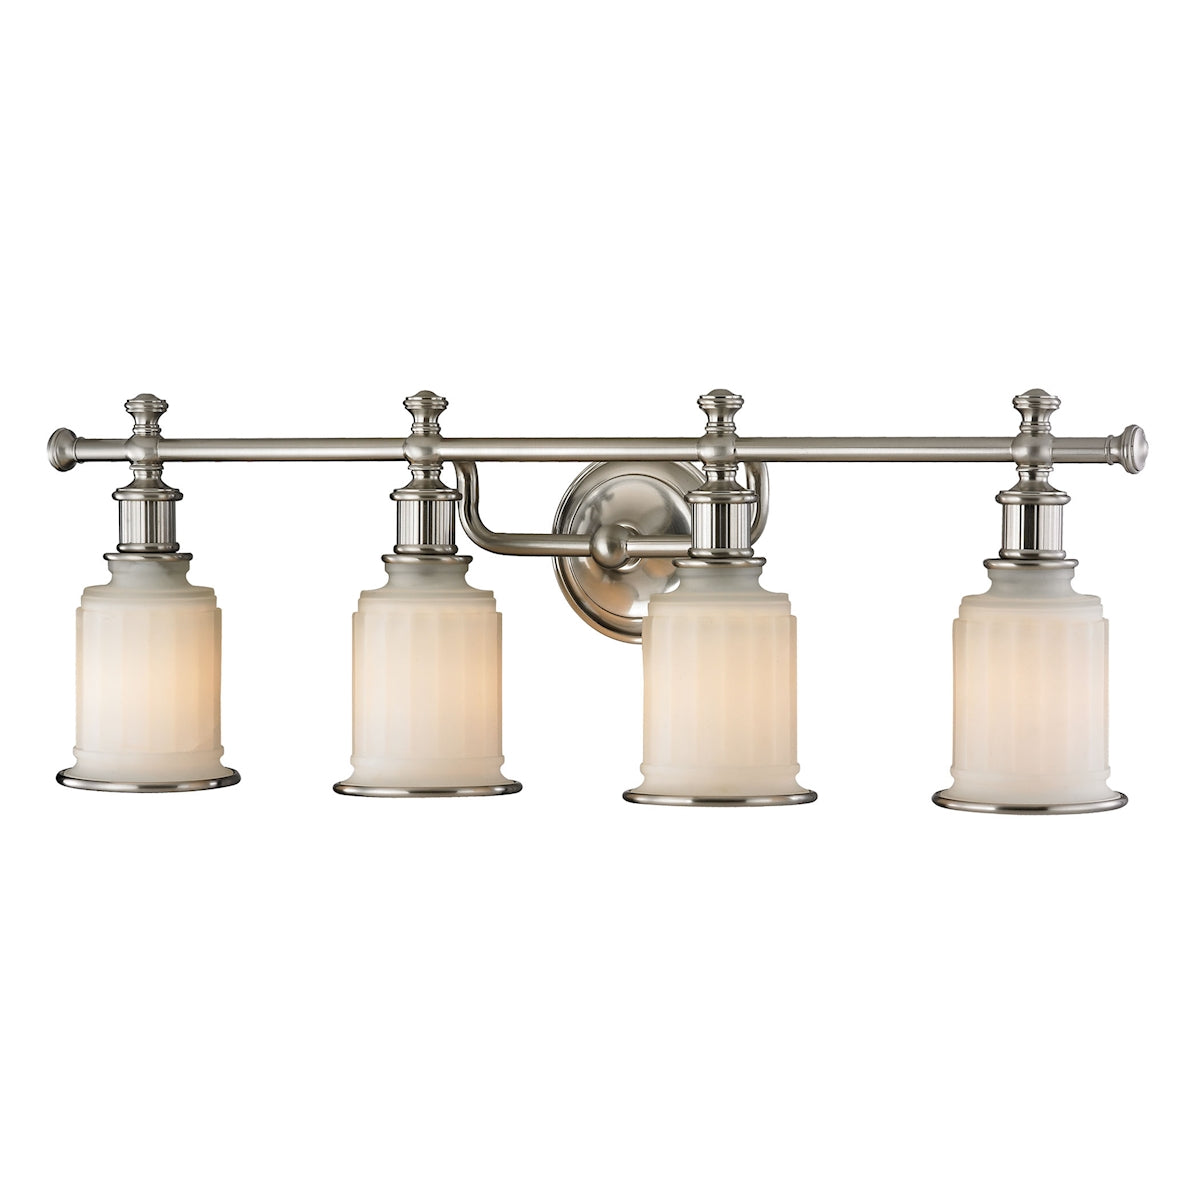 ELK Lighting 52003/4 Acadia 4-Light Vanity Lamp in Brushed Nickel with Opal Reeded Pressed Glass